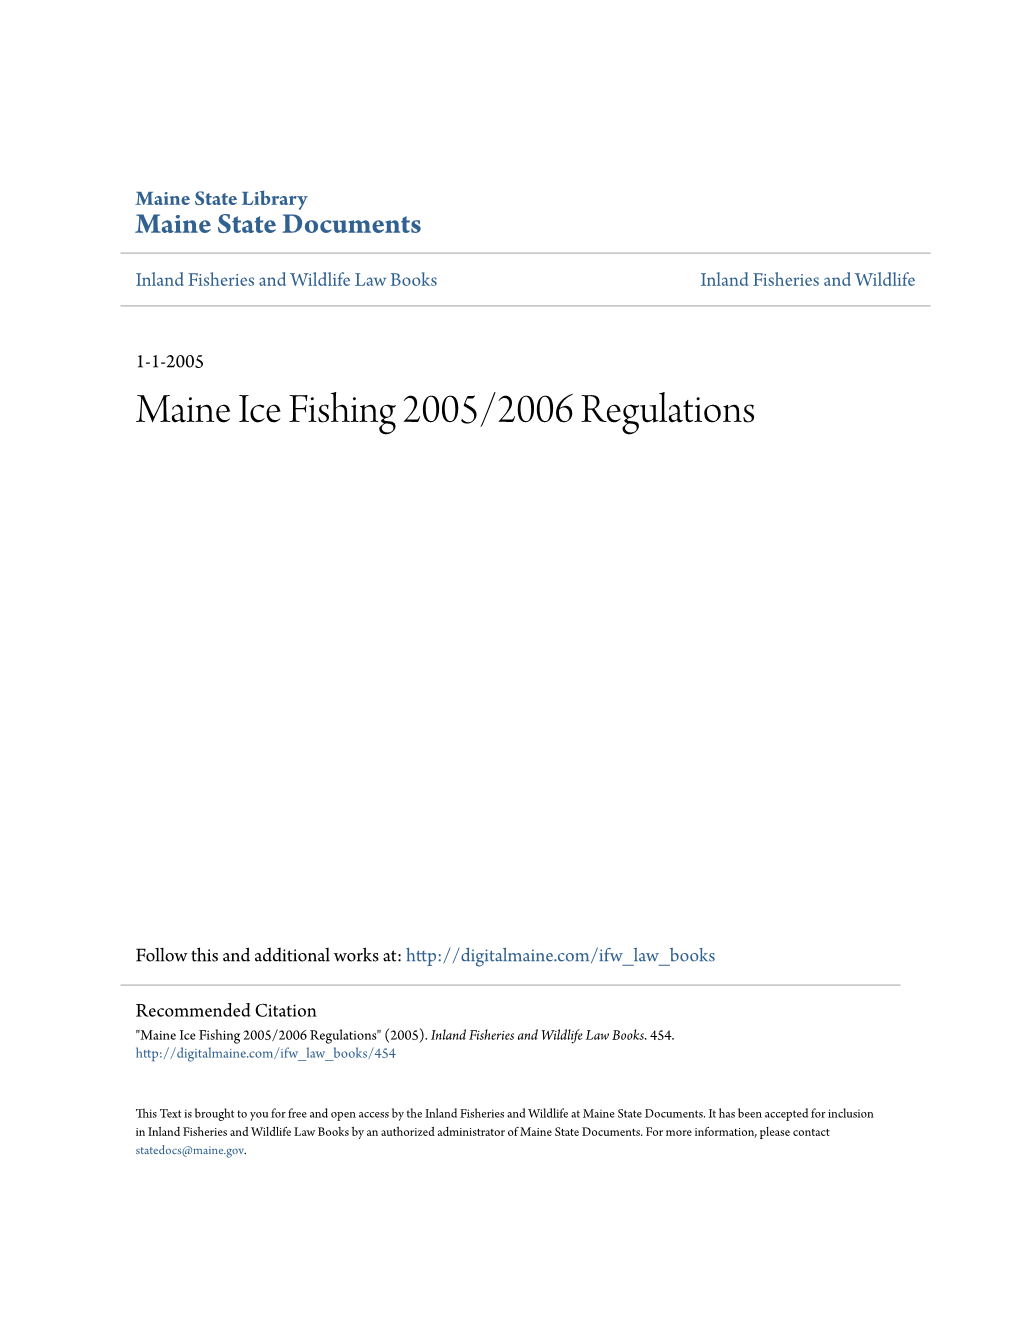 Maine Ice Fishing 2005/2006 Regulations